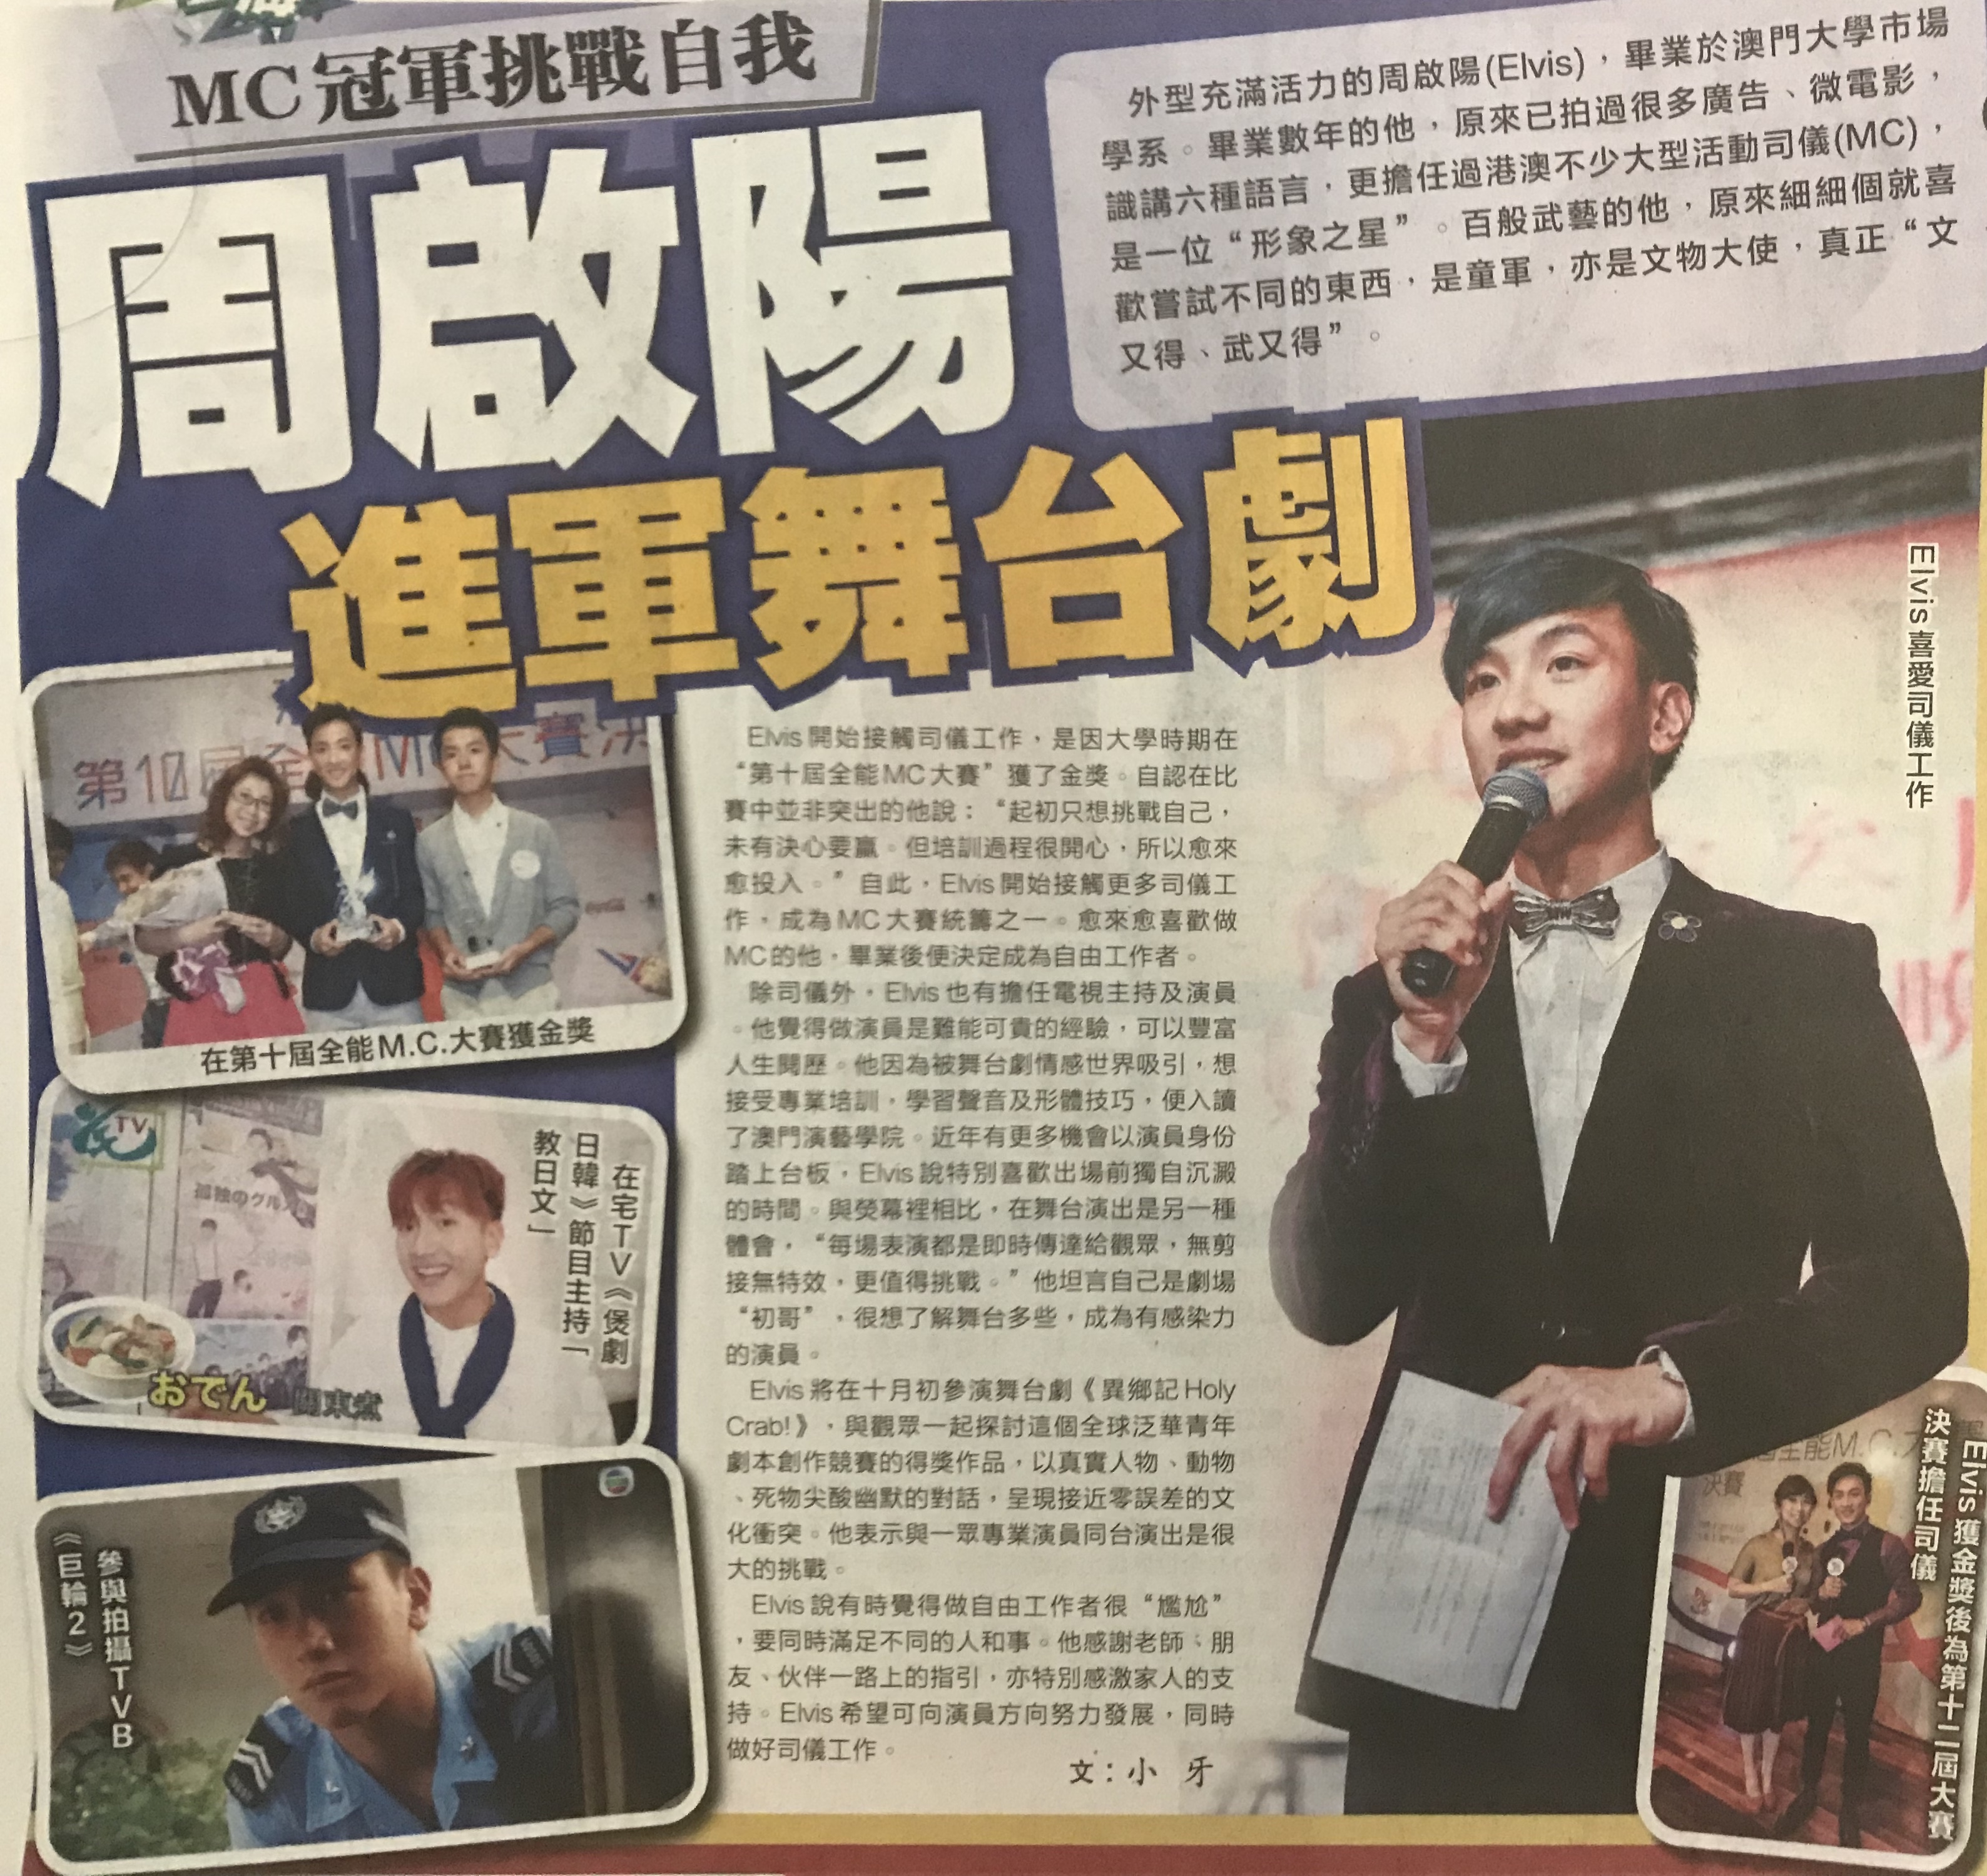 司儀媒體報導周啓陽 Elvis Chao: MC冠軍挑戰自我